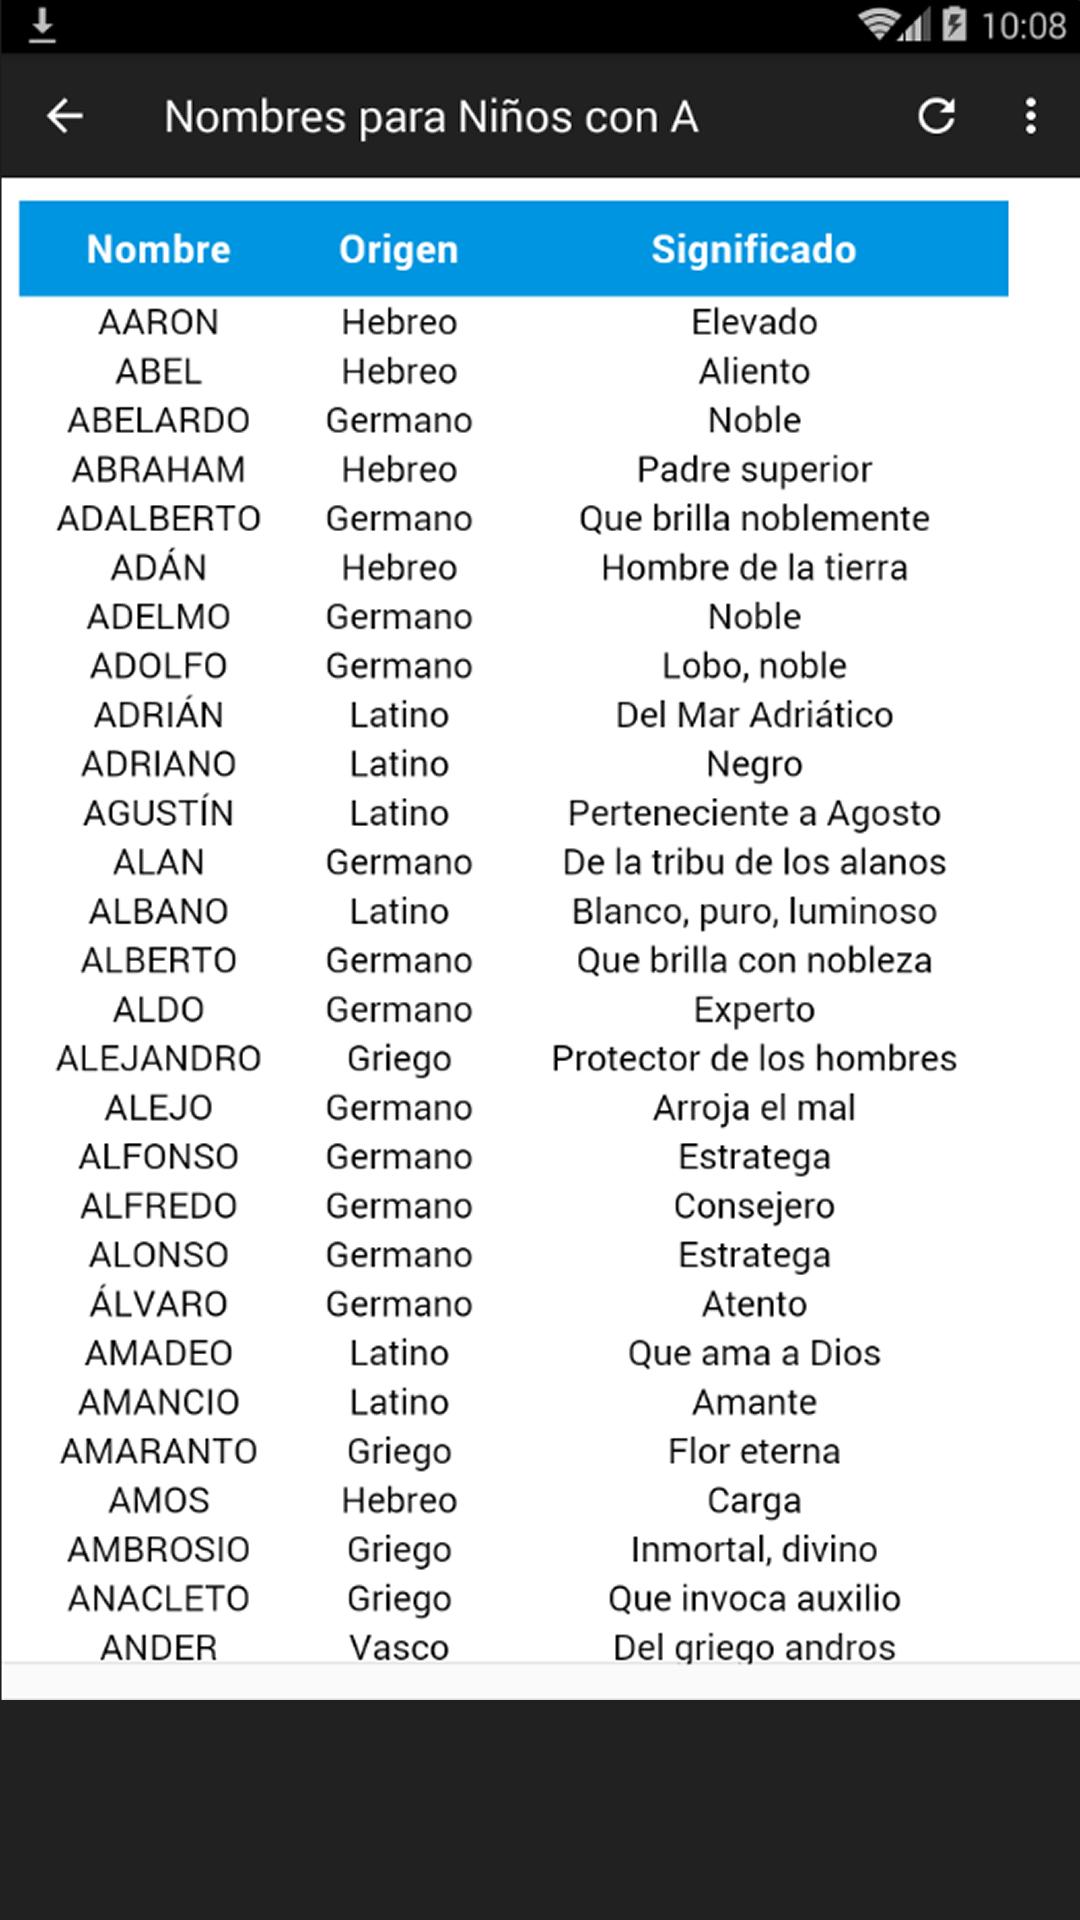 Nombres para Niños y Niñas for Android - APK Download